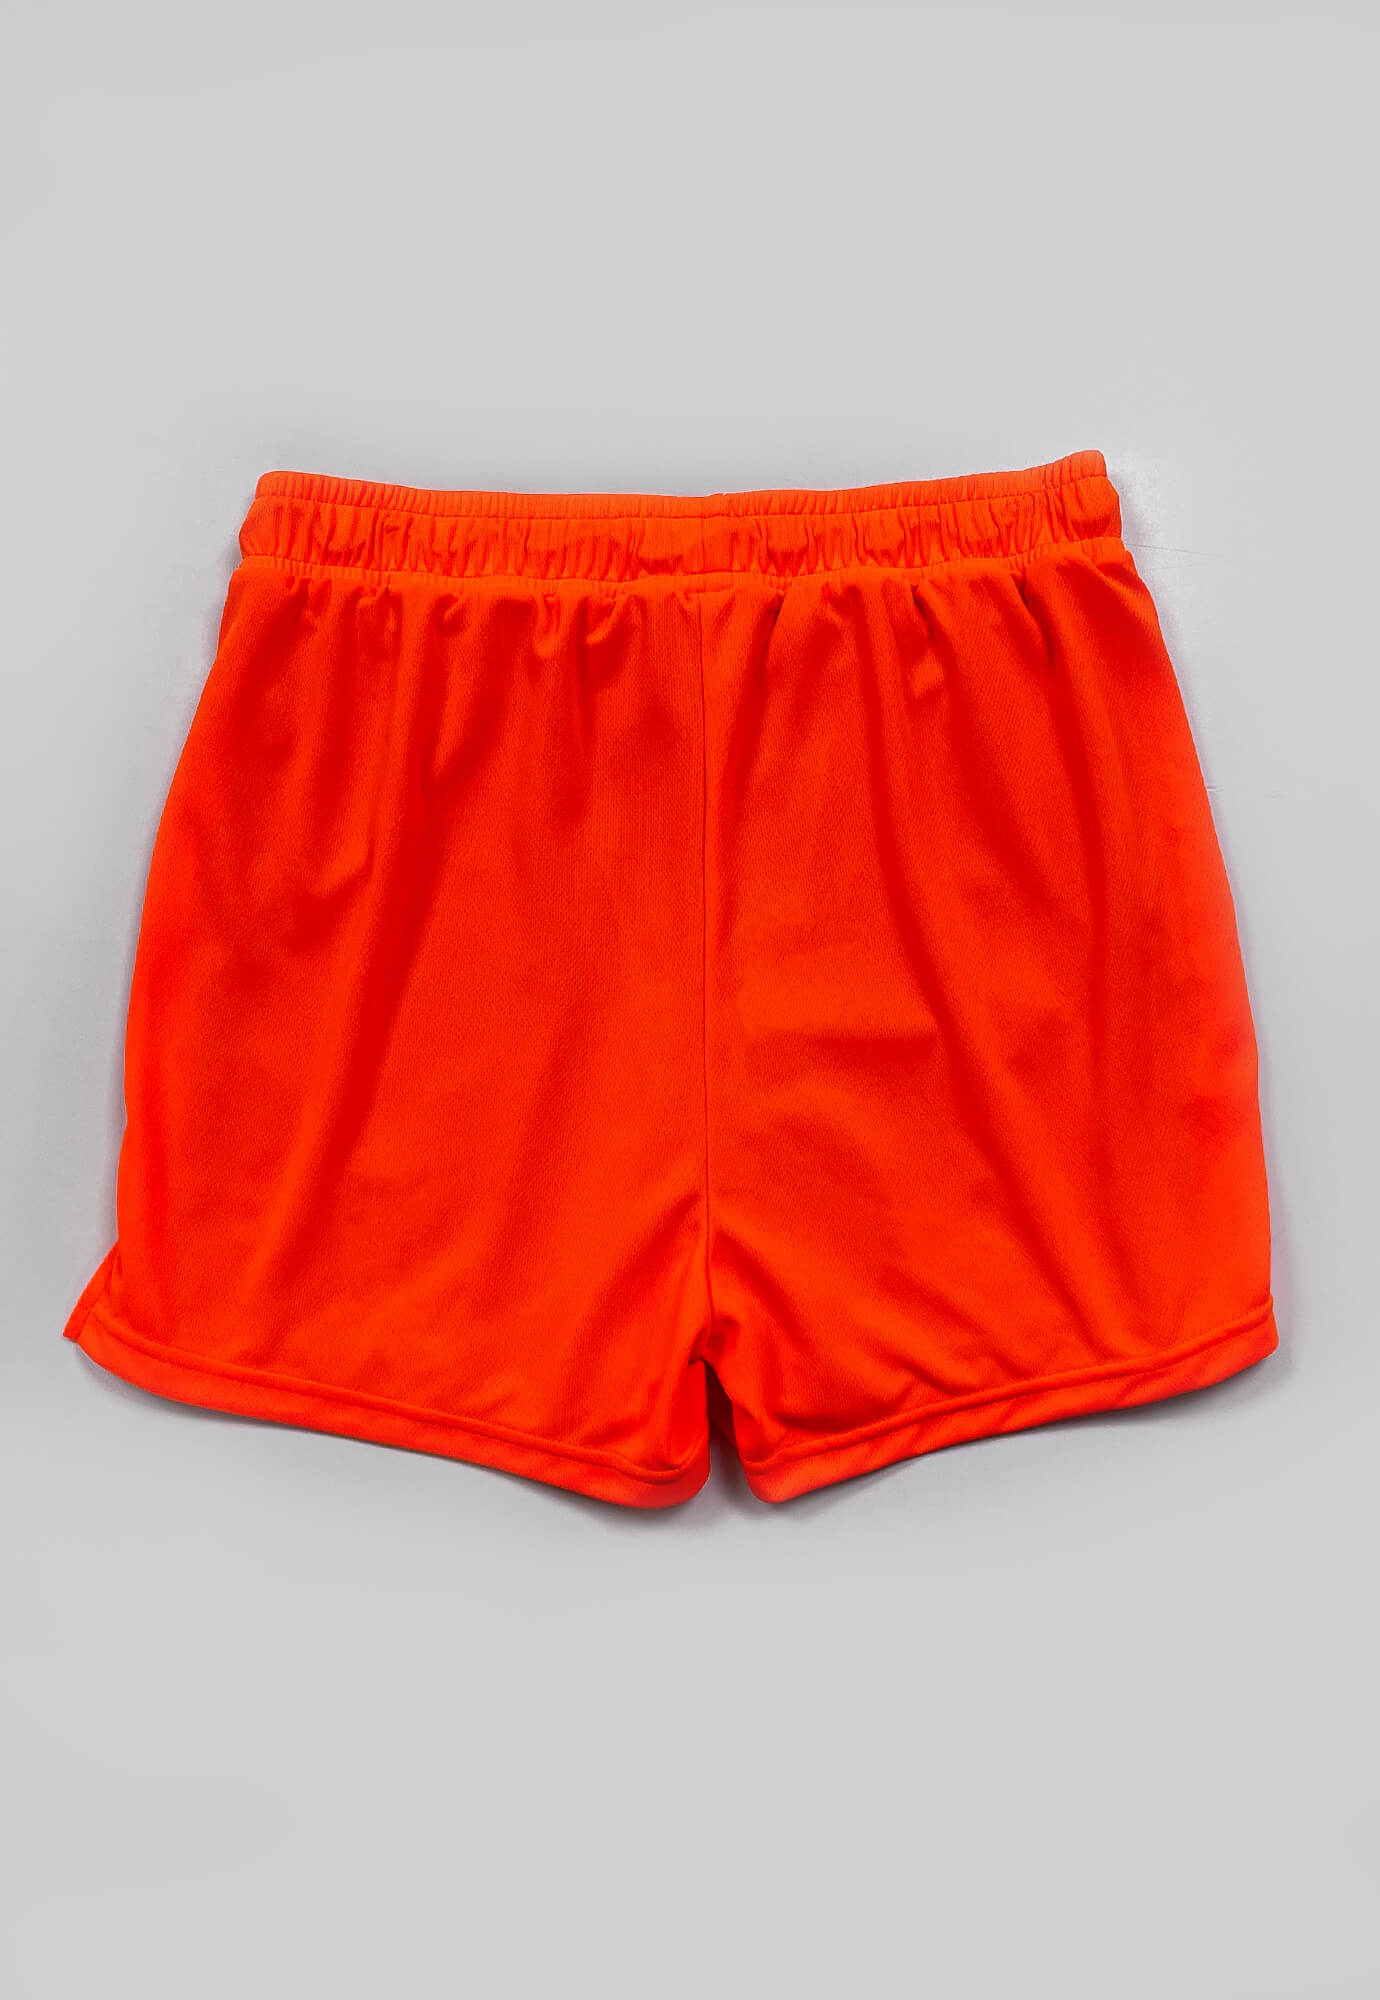 Short deportiva naranja neon fondo entero, ciclista interno, cordón ajustable y bolsillos laterales para hombre